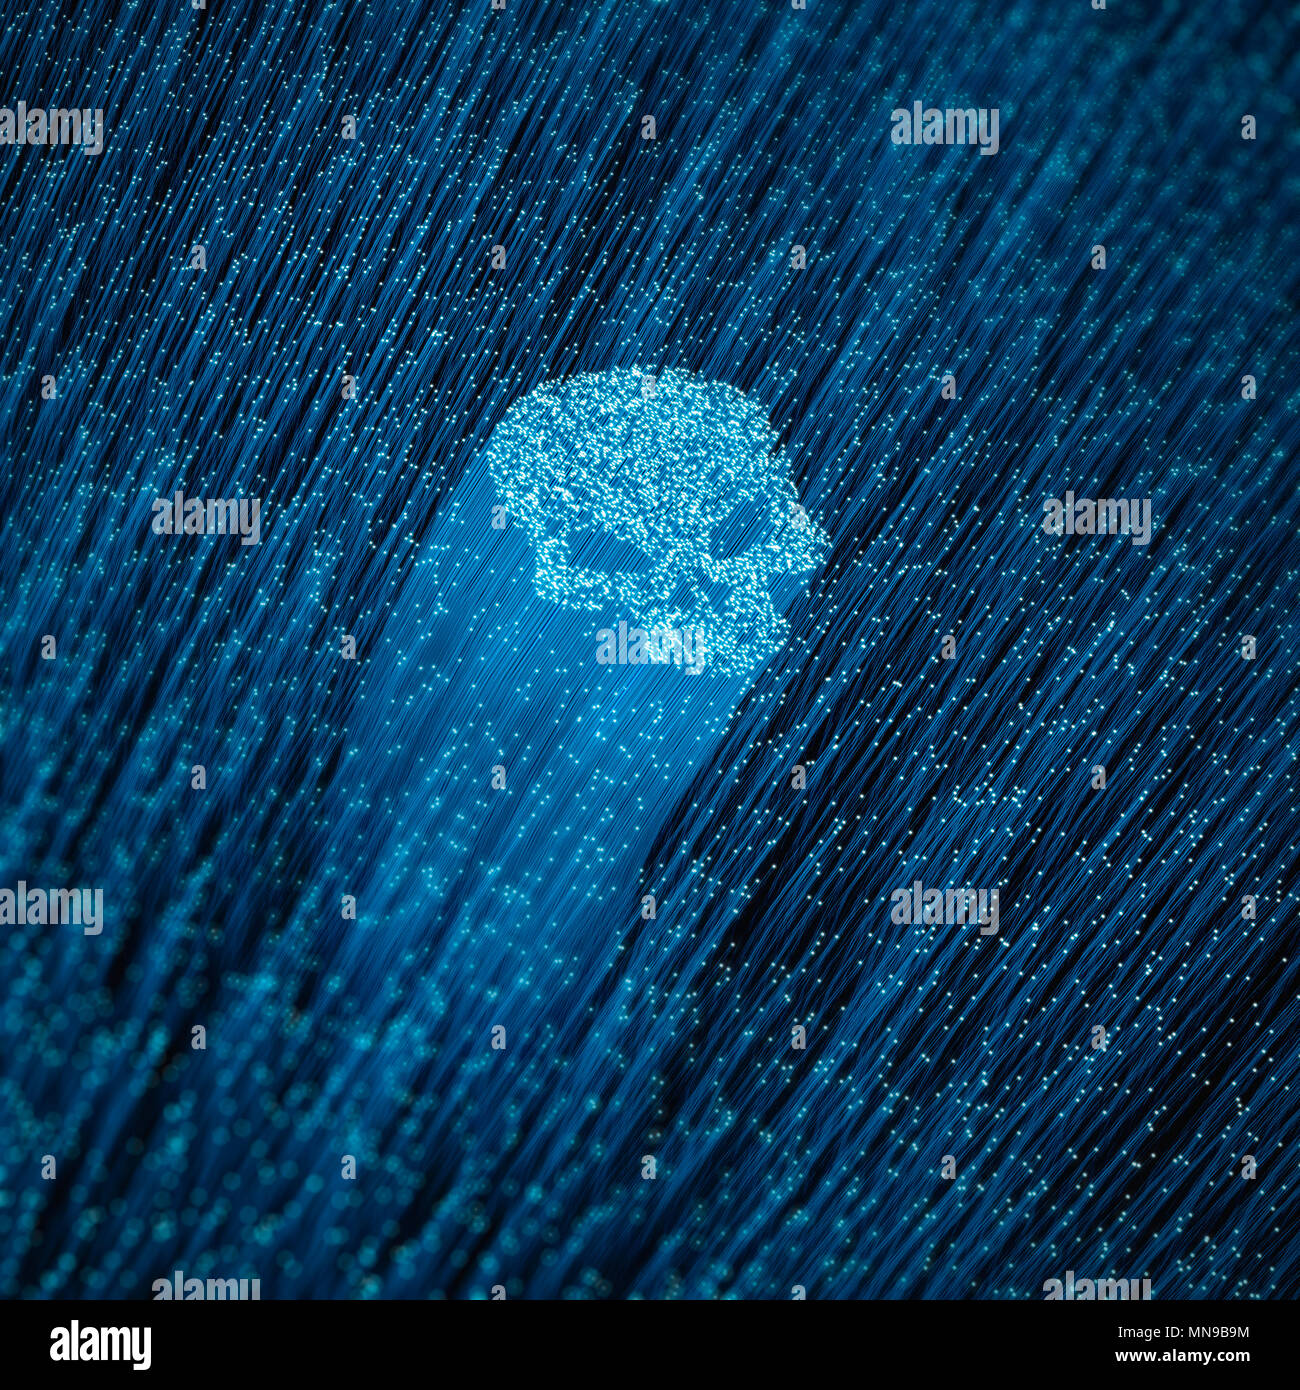 Virus informatique fibre optique concept / 3D illustration de fibres optiques lumineux formant une forme de crâne Banque D'Images